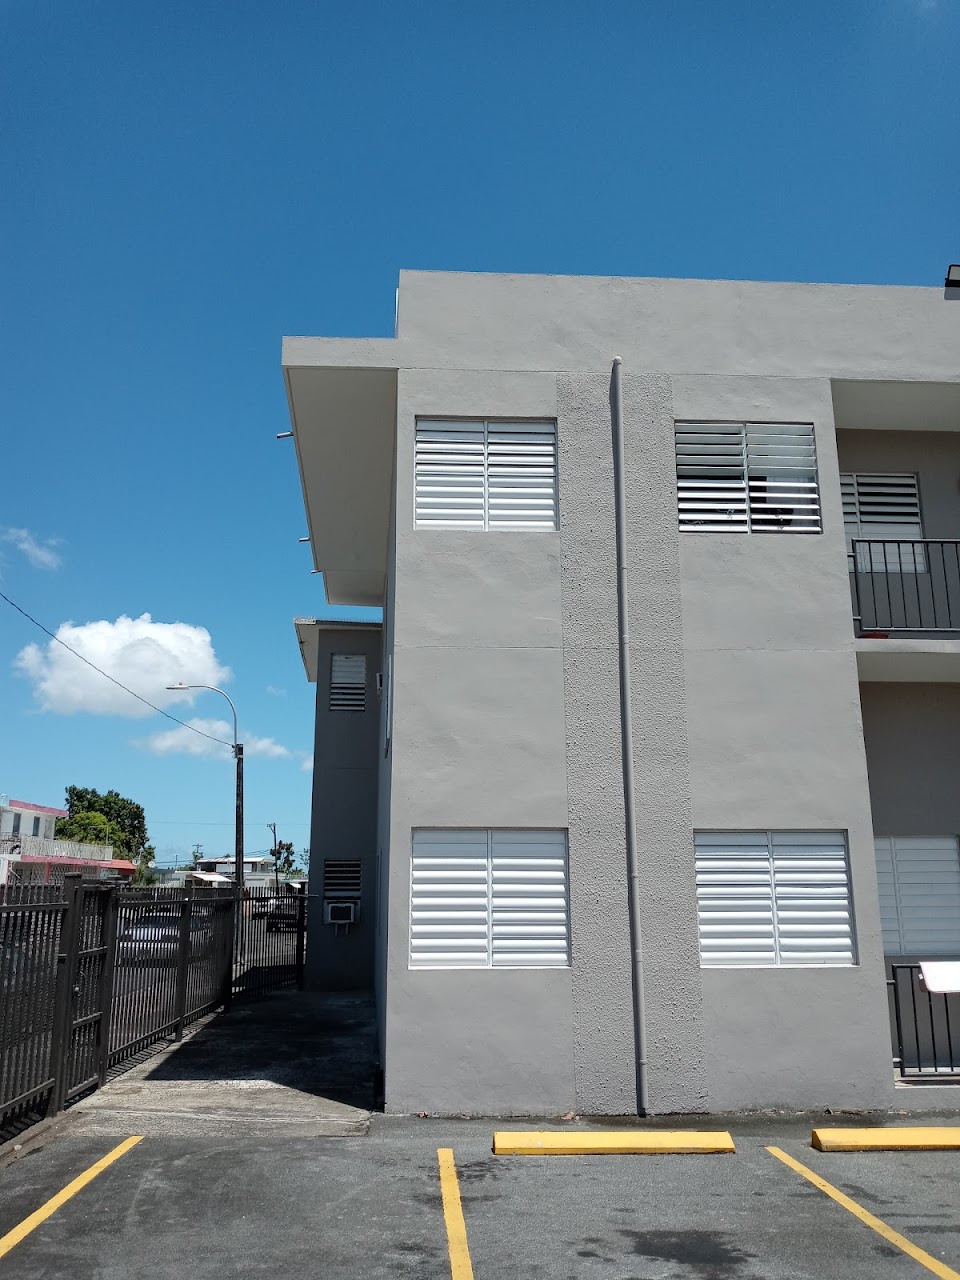 Photo of SANTA JUANITA APTS. Affordable housing located at 38 CALLE UN SAN JUAN, PR 00915